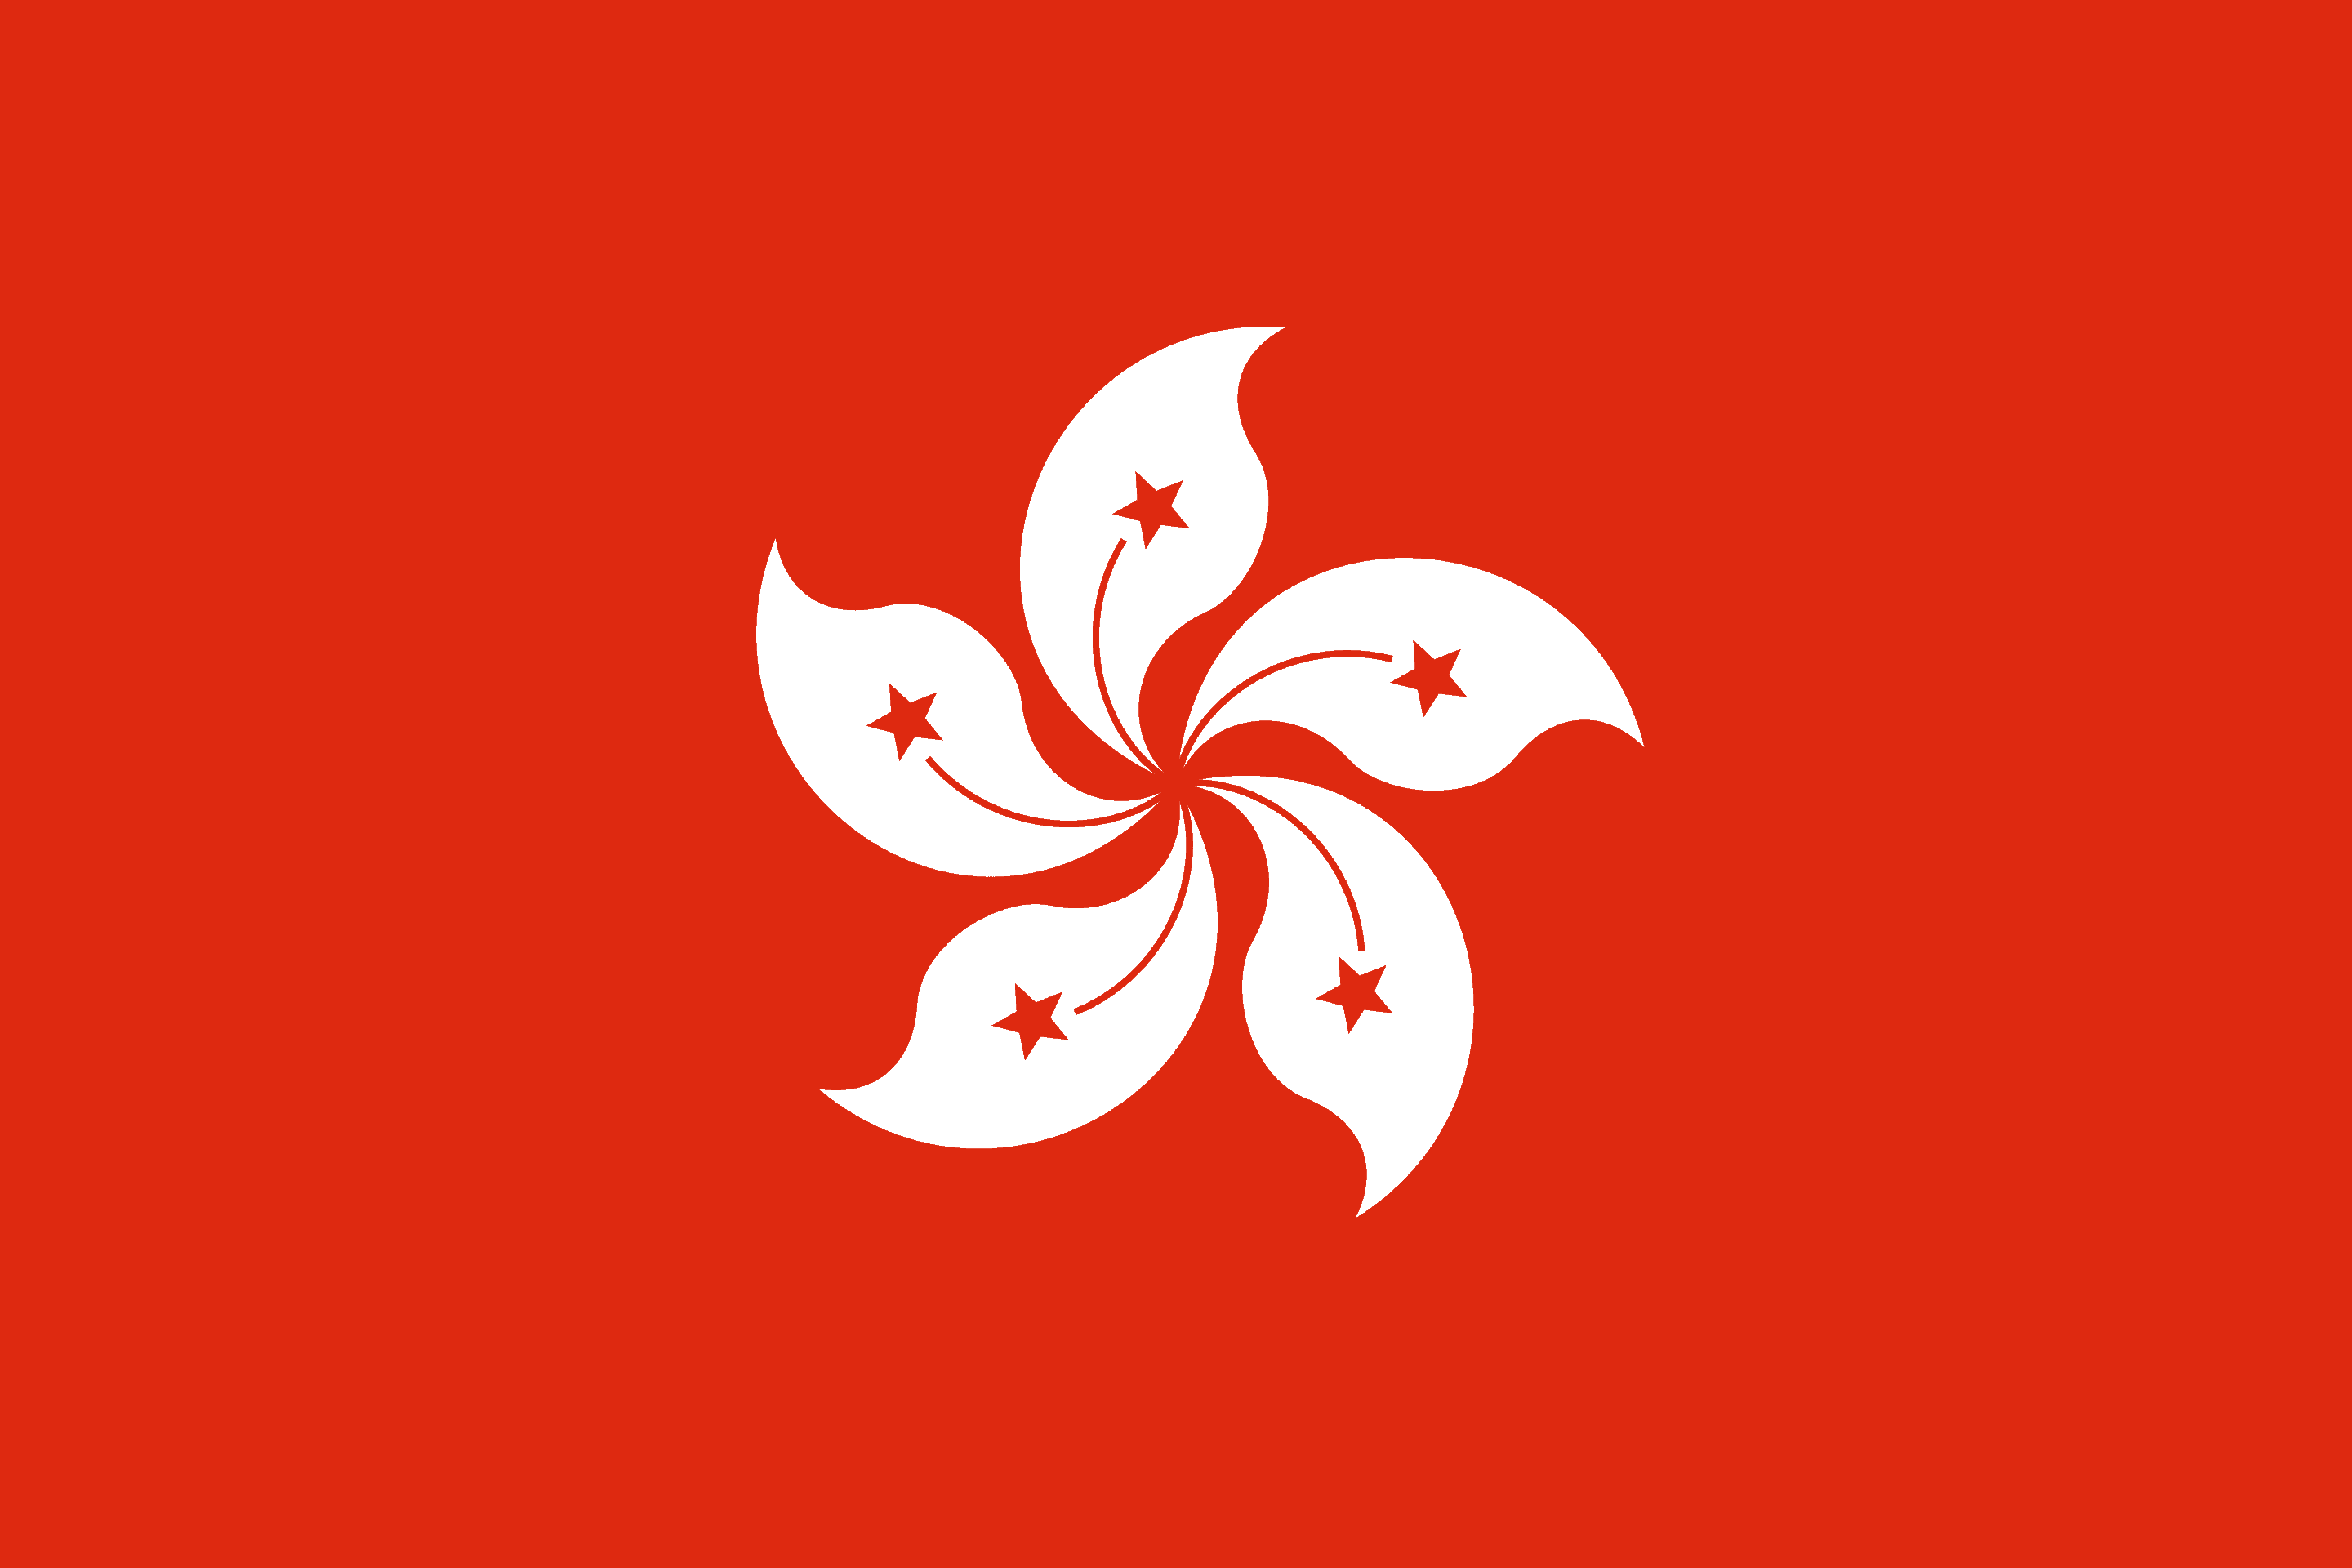 Hong Kong Flag - Hong Kong Drone Laws